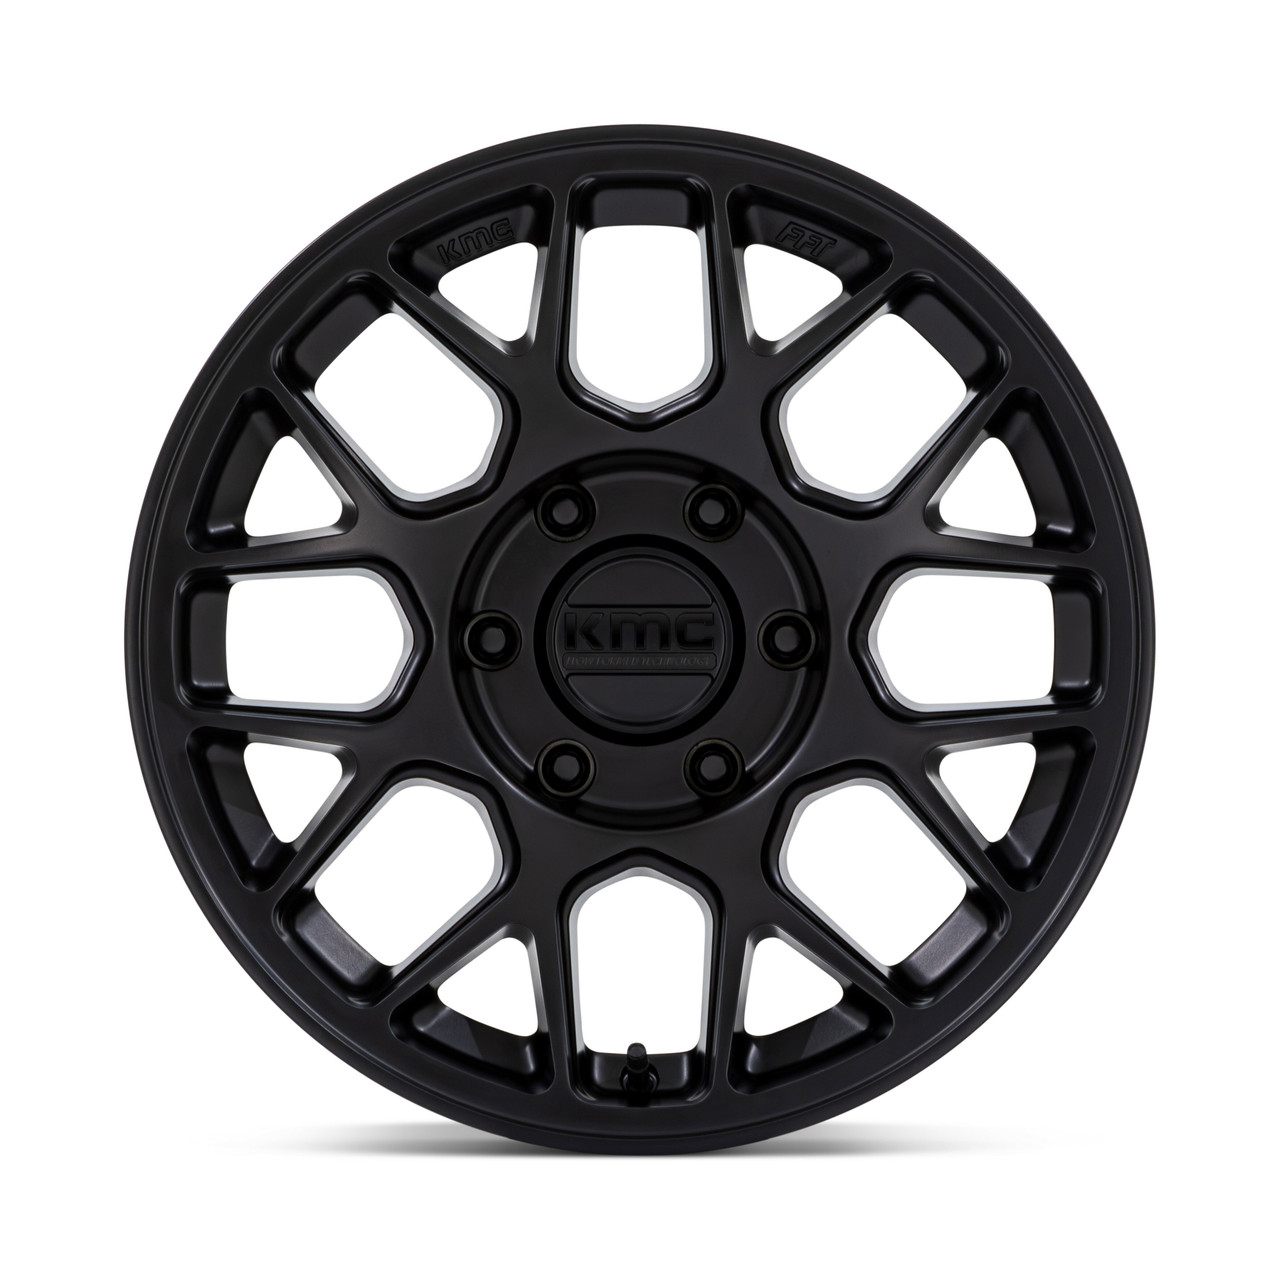 Set 4 17" KMC KM730 Hatchet Matte Black 17x8.5 Wheels 6x5.5 25mm For Nissan Rims